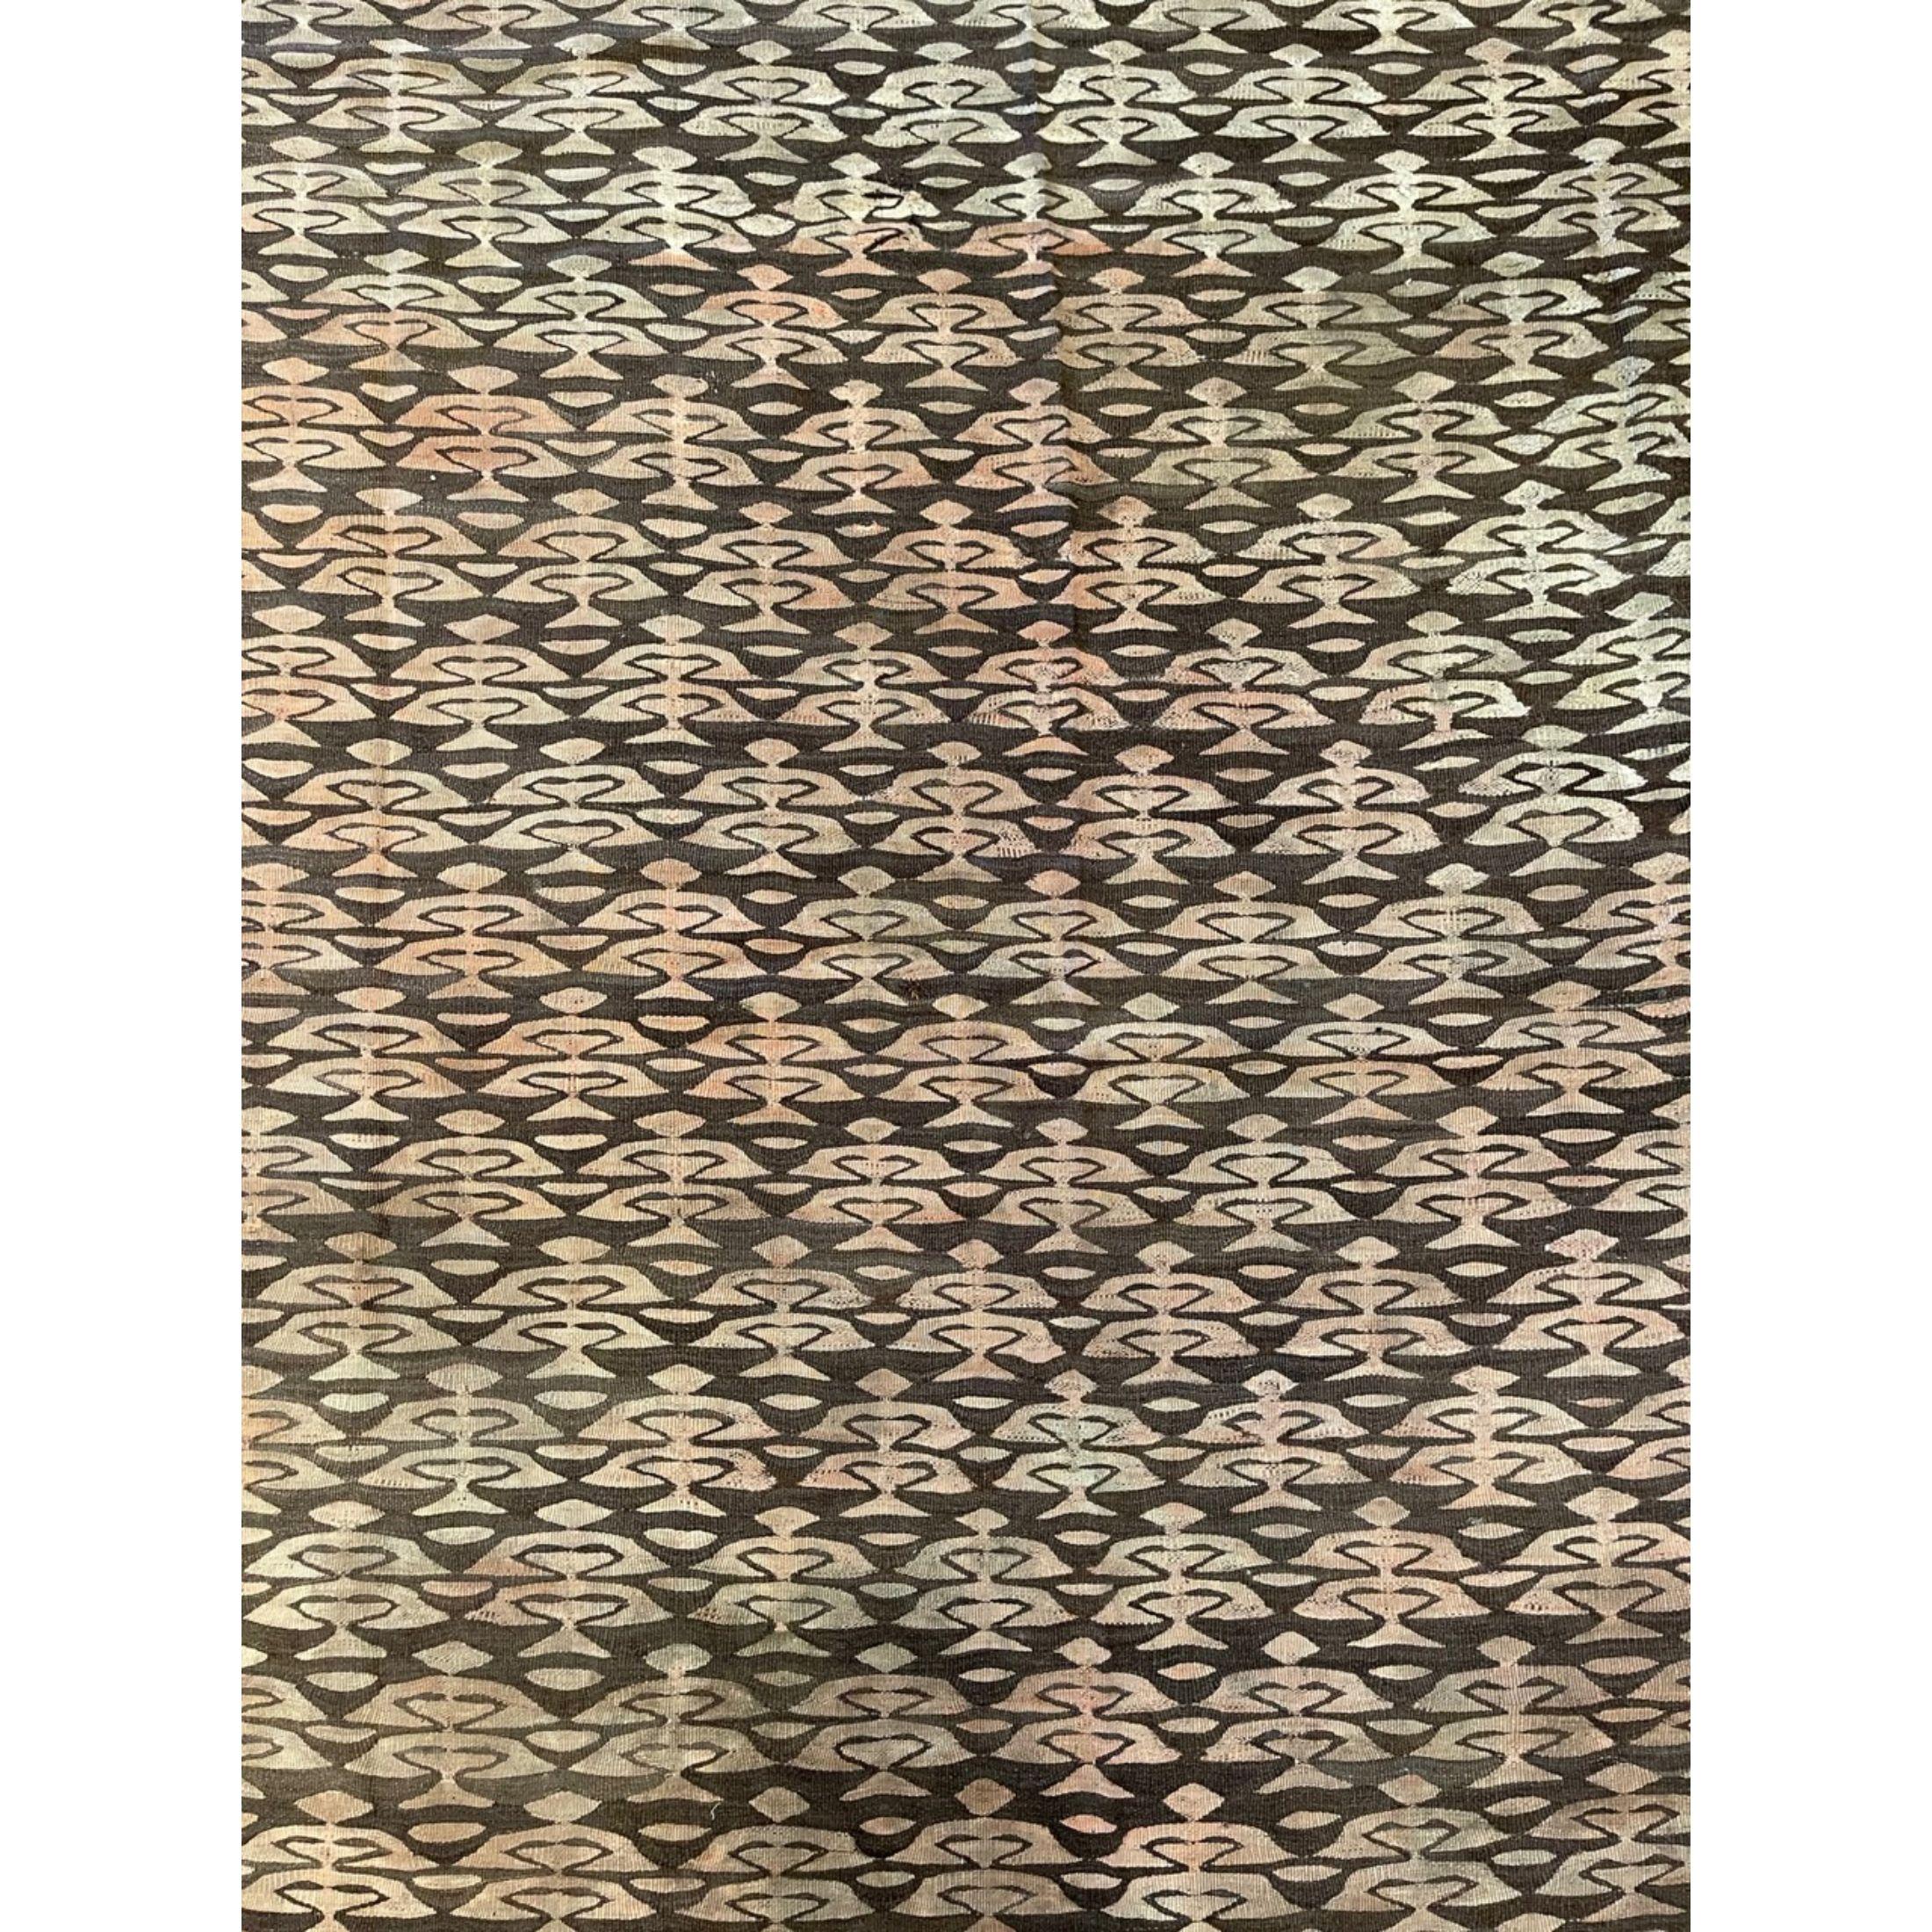 Bessarabische Kelims und Teppiche sind flach gewebte Teppiche, die ihren Ursprung in den russischen Provinzen der Ukraine und Moldawien in den späten 1800er bis frühen 1900er Jahren haben. Während die meisten Teppichexperten die flach gewebten